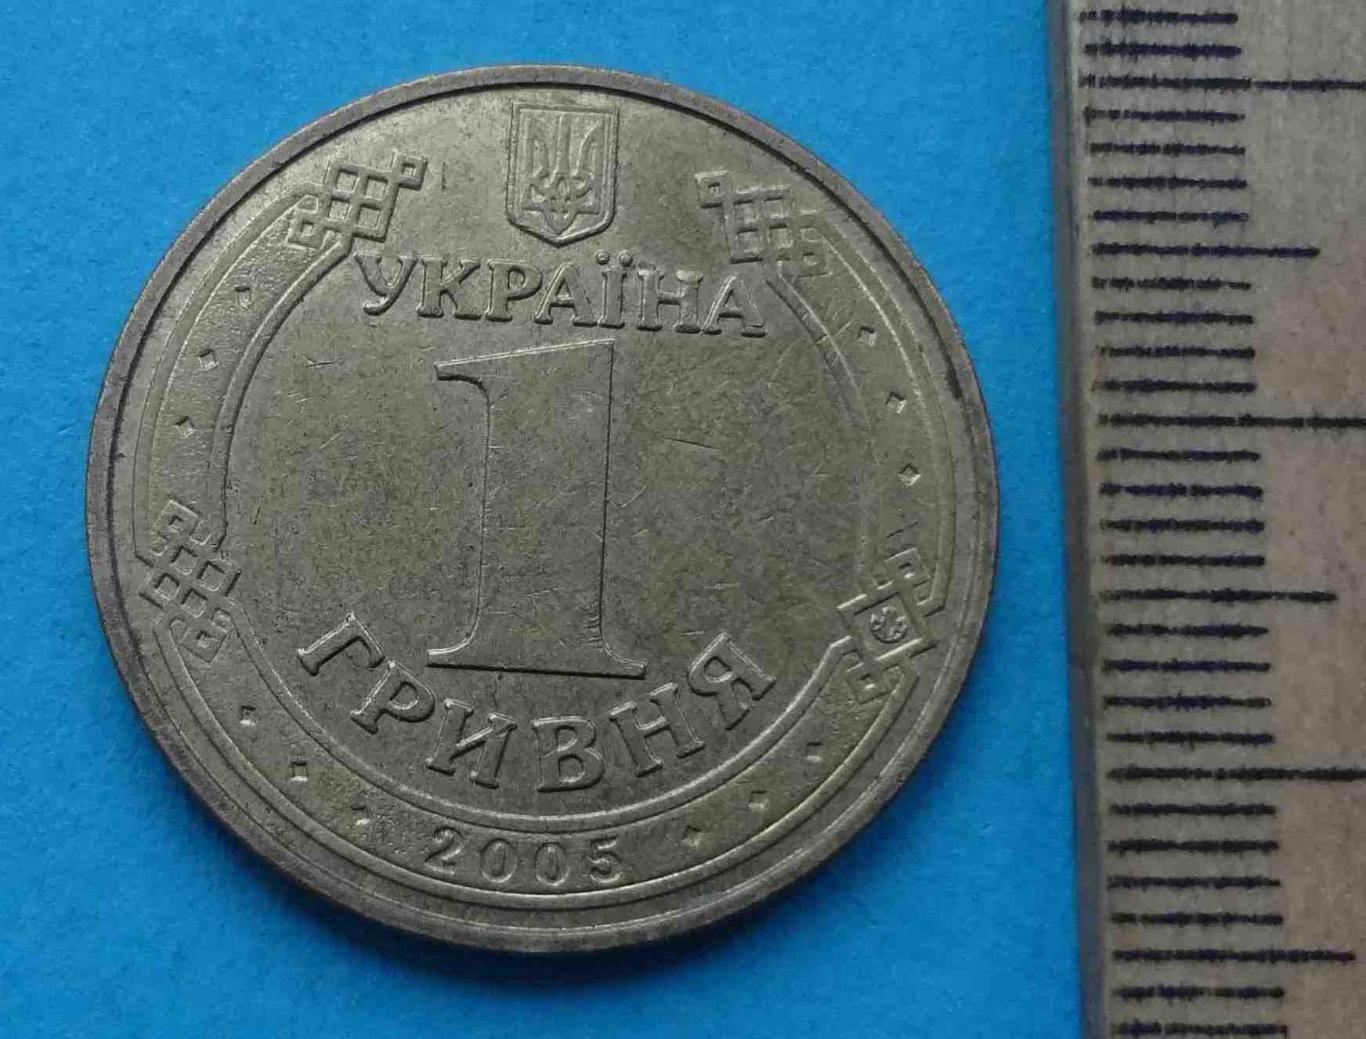 1 гривна 2005 года 60 лет Победы 1941-1945 Украина (20) 1